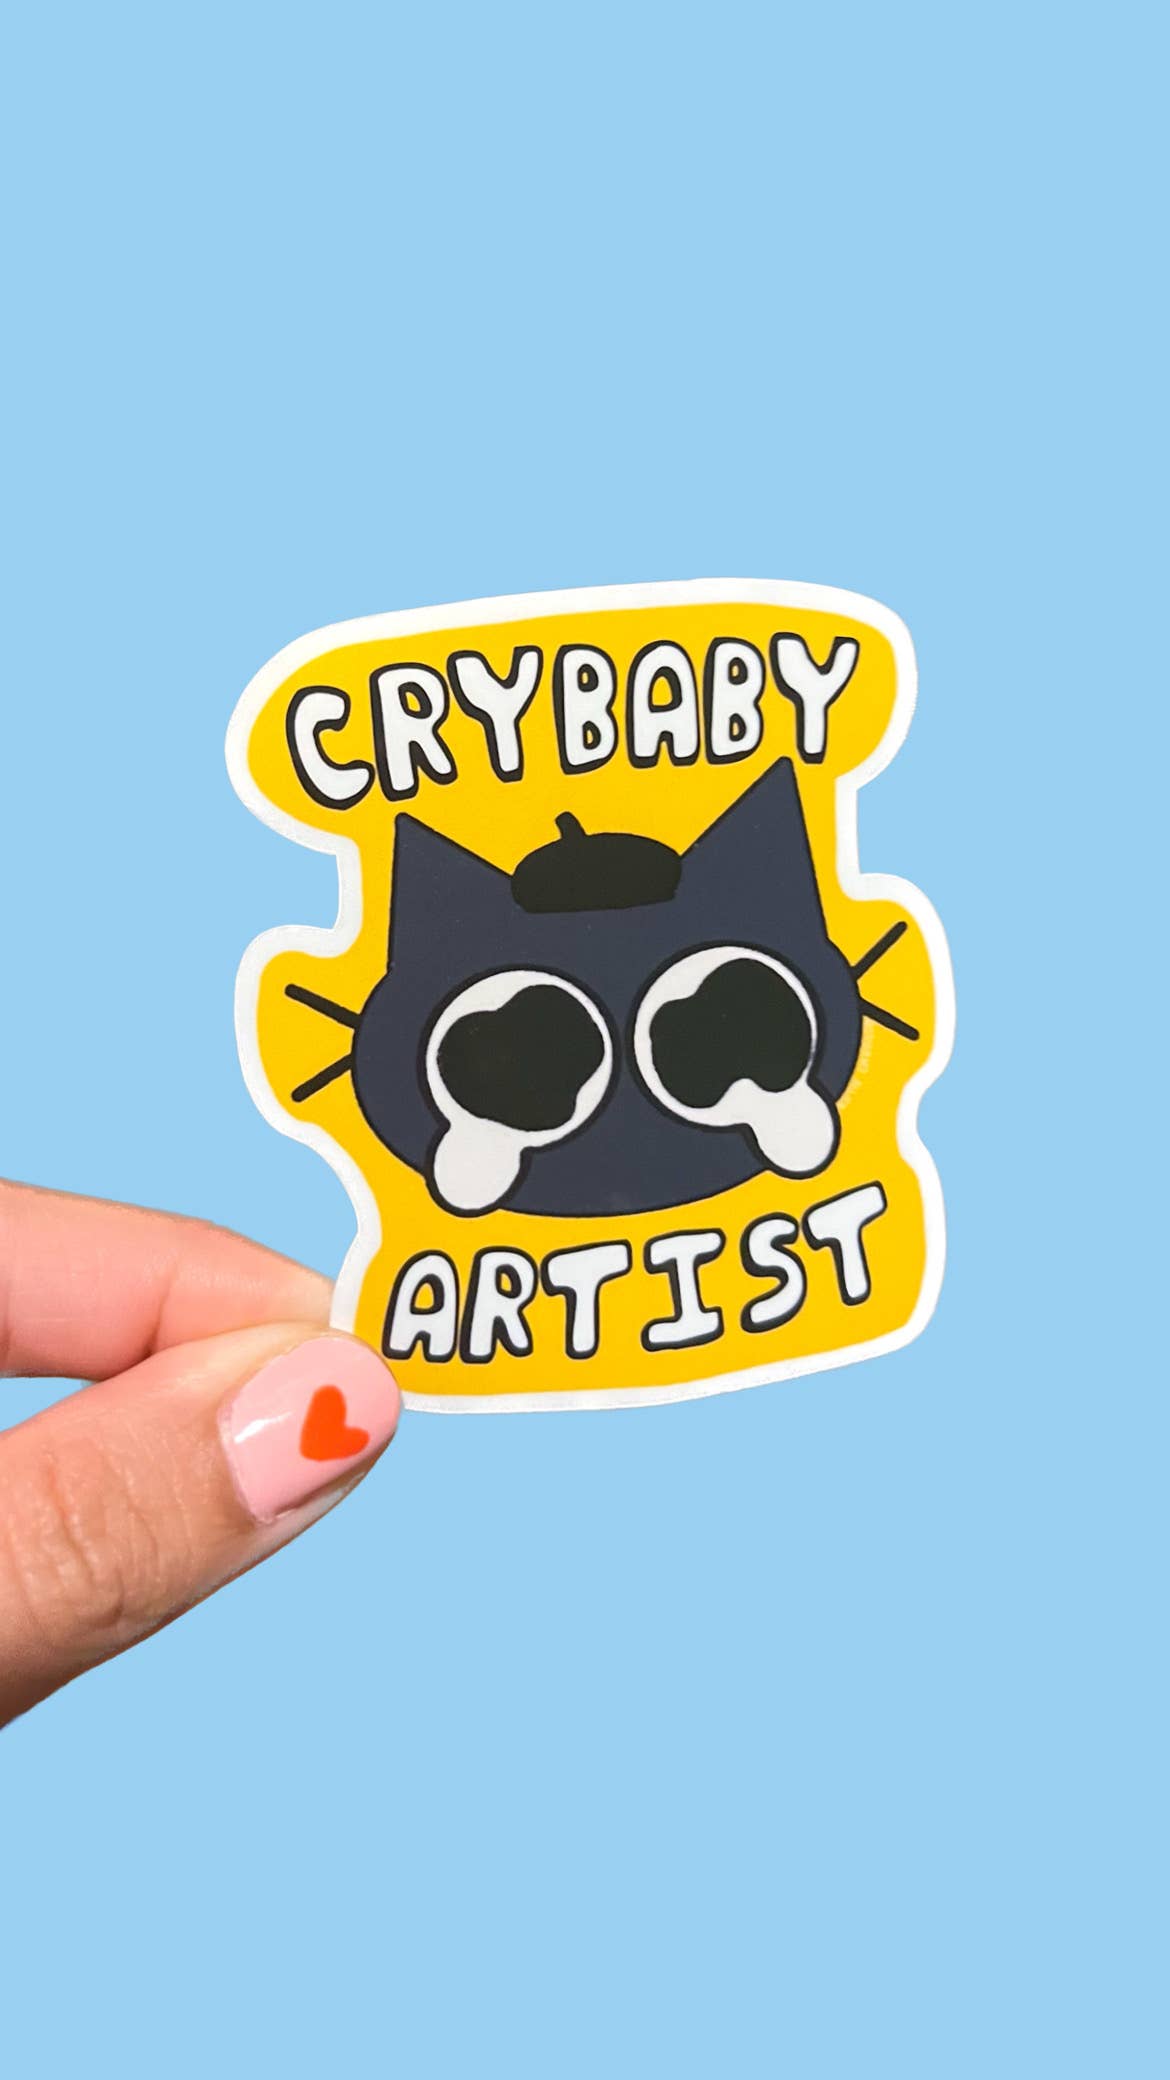 Crybaby Artist Sticker